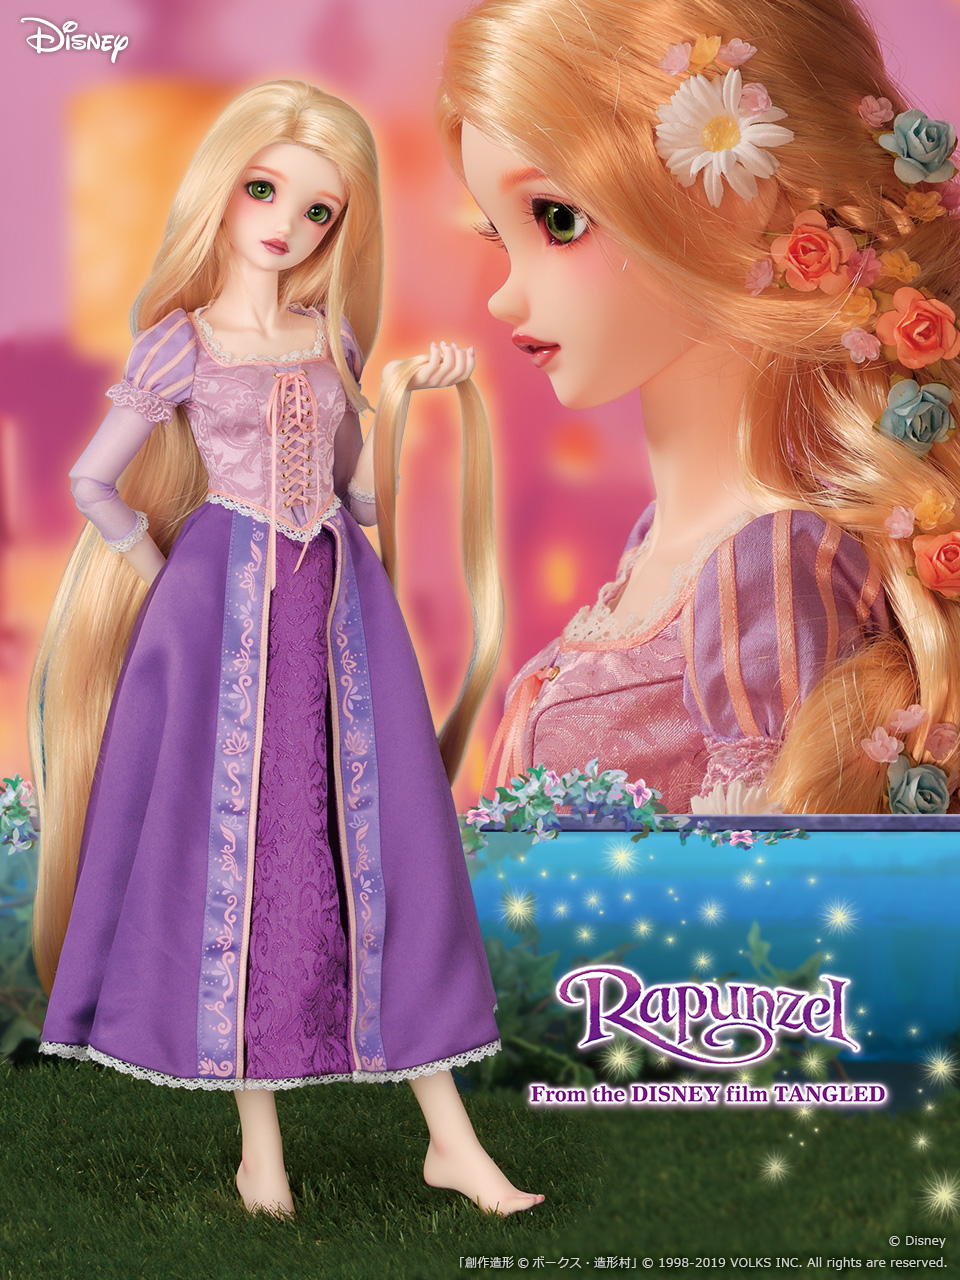 Super Dollfie Disney Princess Collection Rapunzel Super Dollfieディズニーコレクション公式ウェブサイト ボークス公式 ドルフィー総合サイト